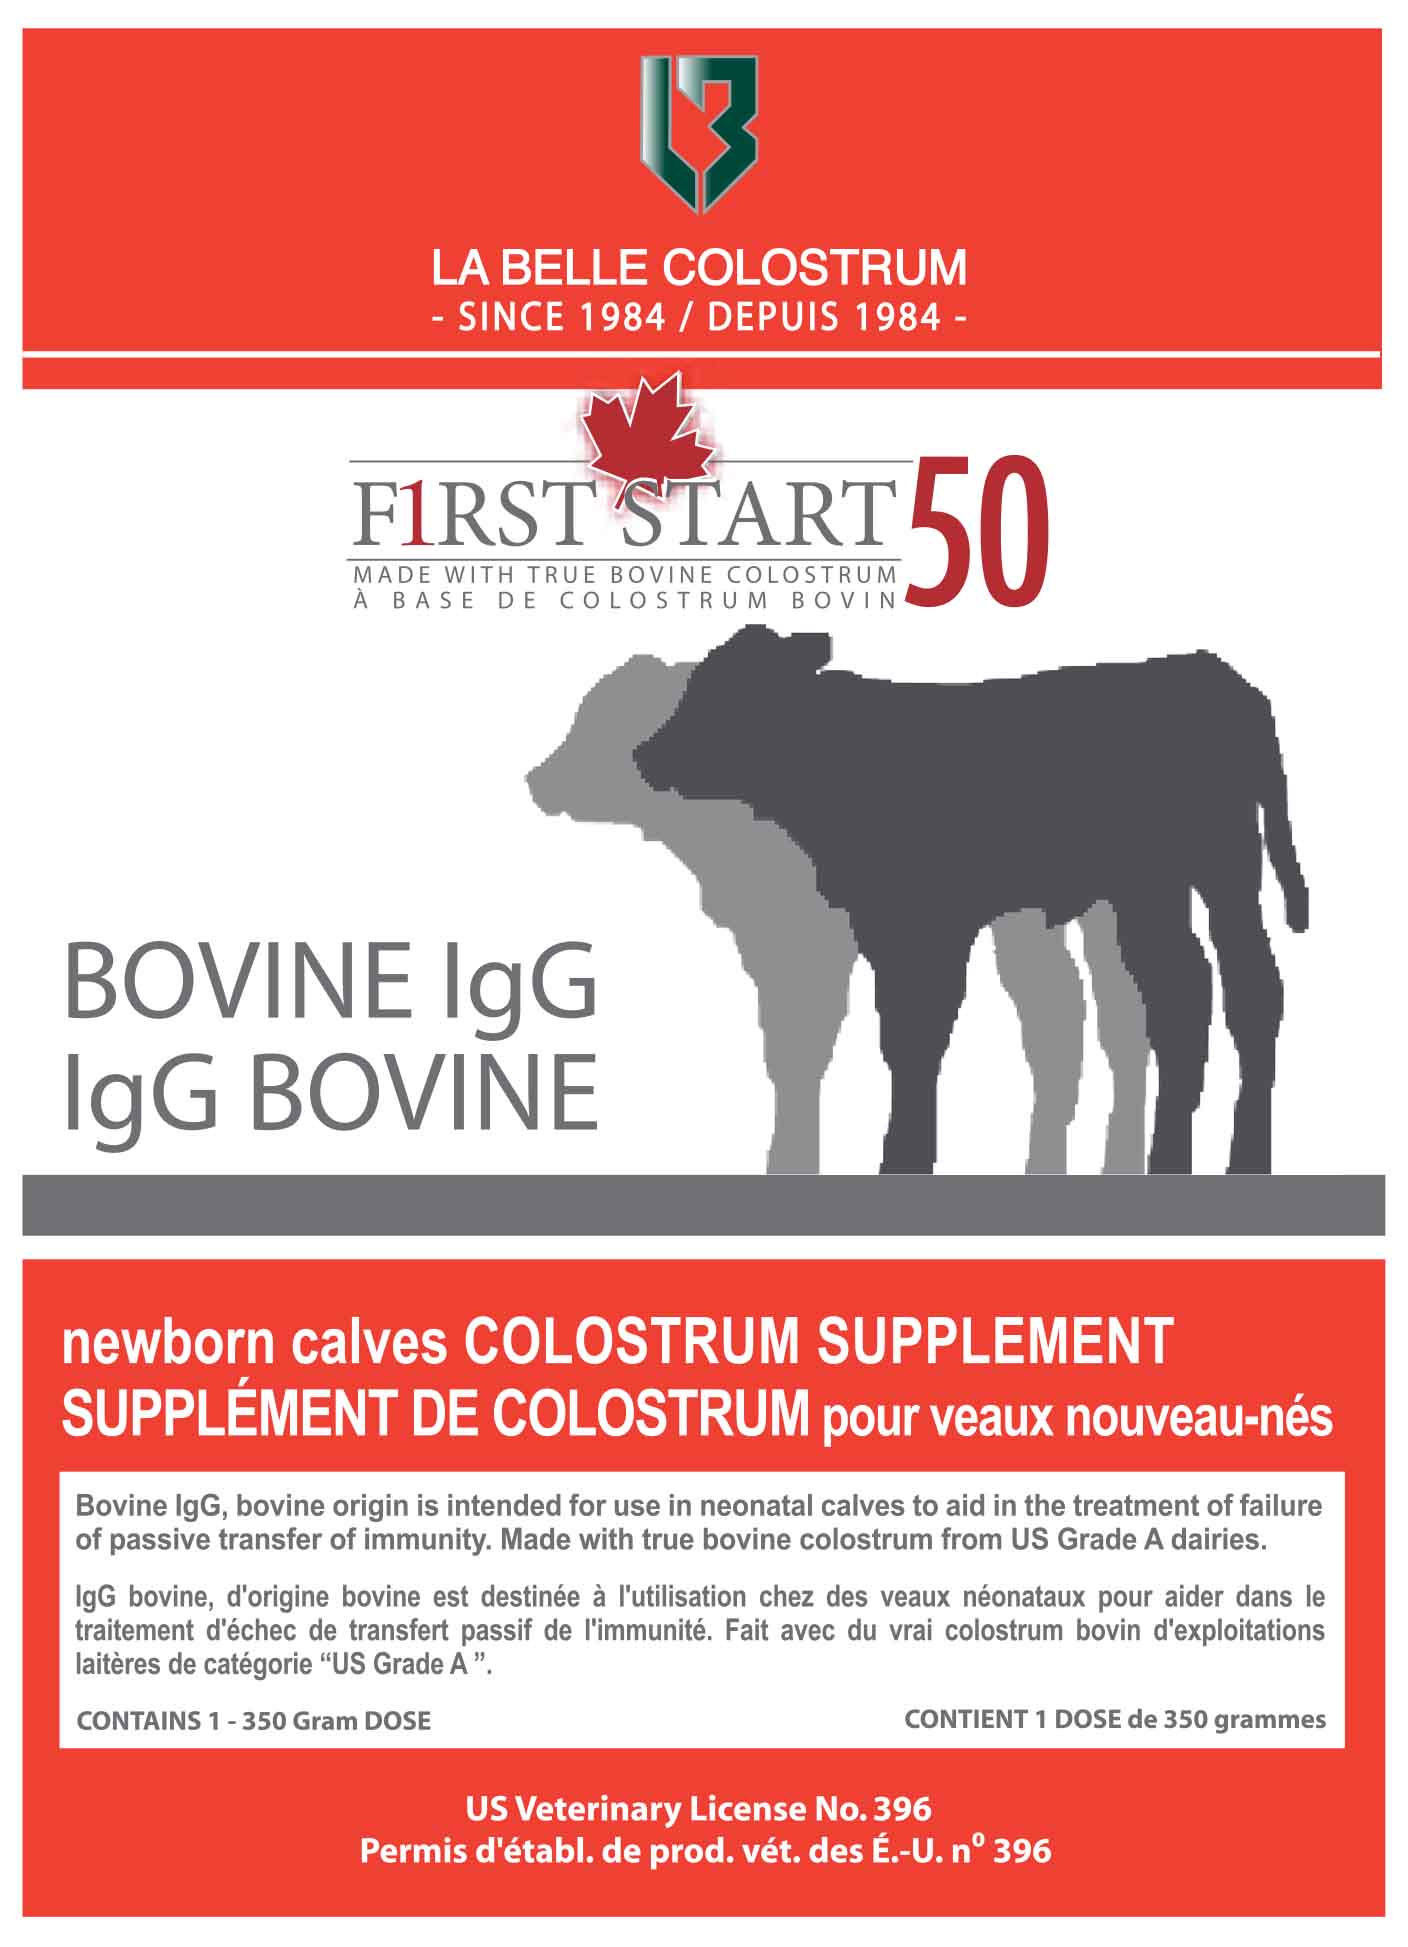 First Start Bovine IgG 50 Colostrum (350g)